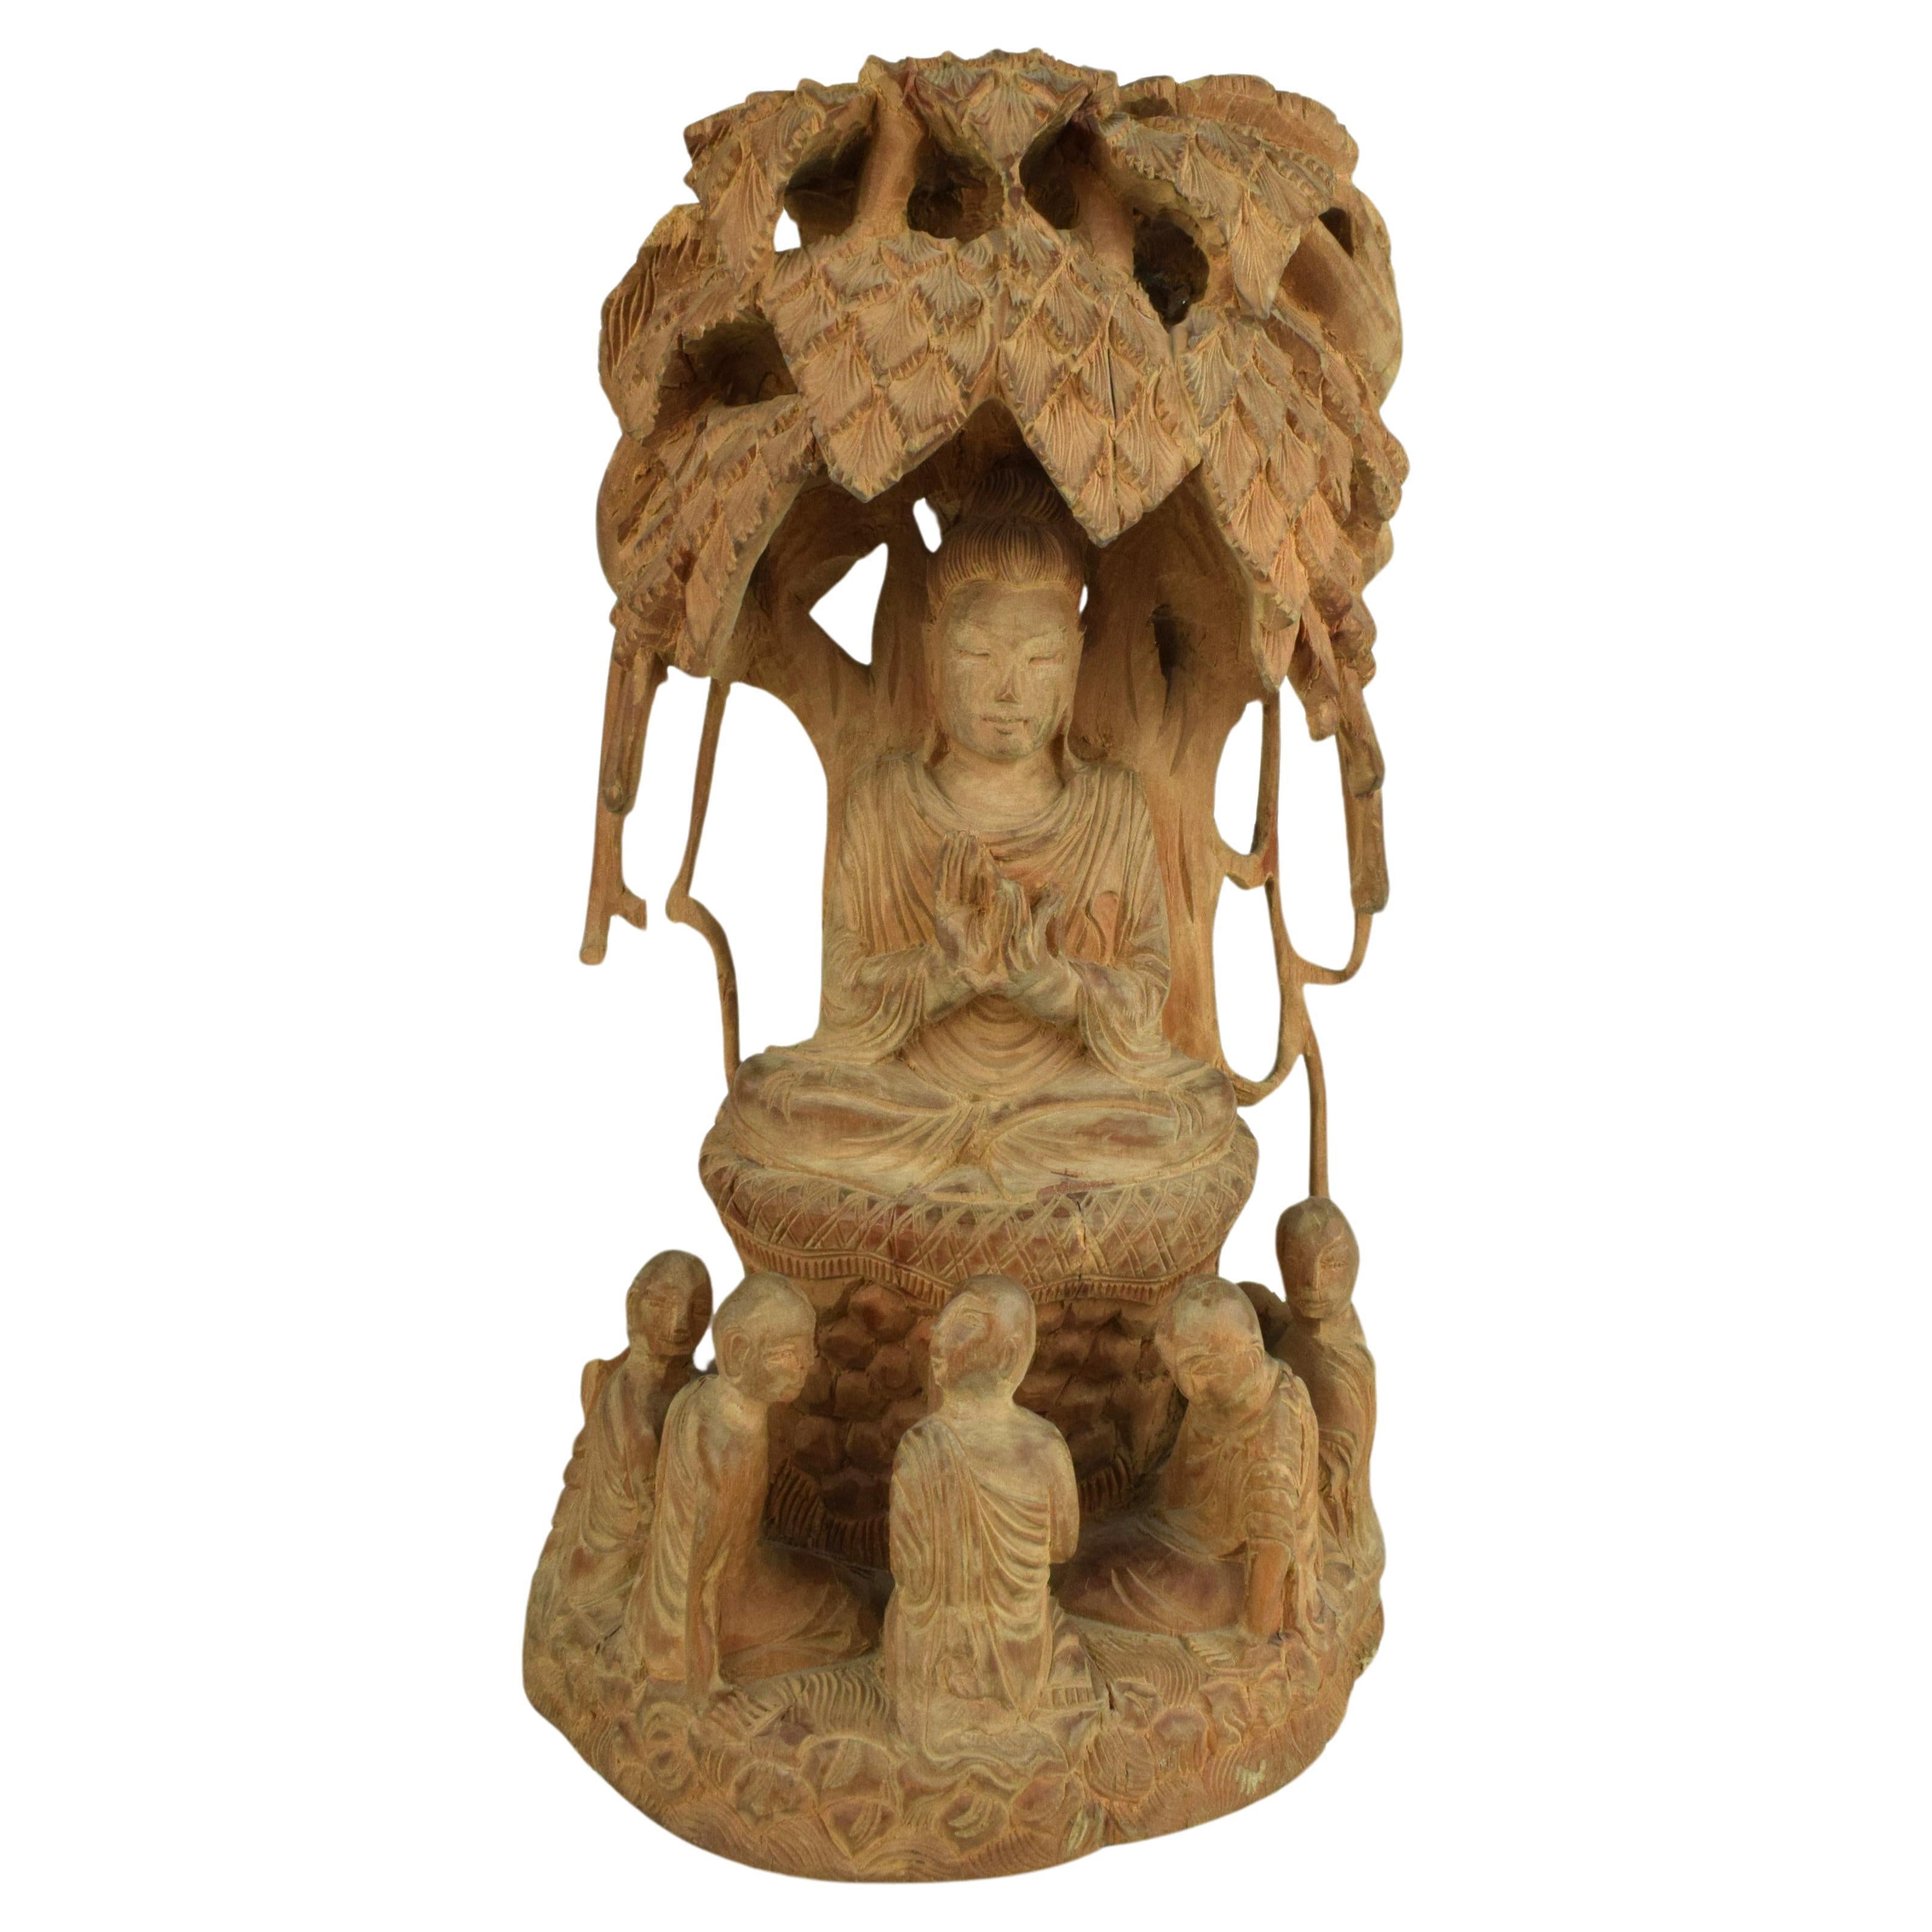 Die Skulptur, die fachmännisch aus duftendem nepalesischem Sandelholz geschnitzt wurde, ist ein Zeugnis der reichen Tradition der Holzschnitzerei in Nepal. Das Medium selbst verleiht dem Kunstwerk eine sinnliche Dimension, wobei das subtile,